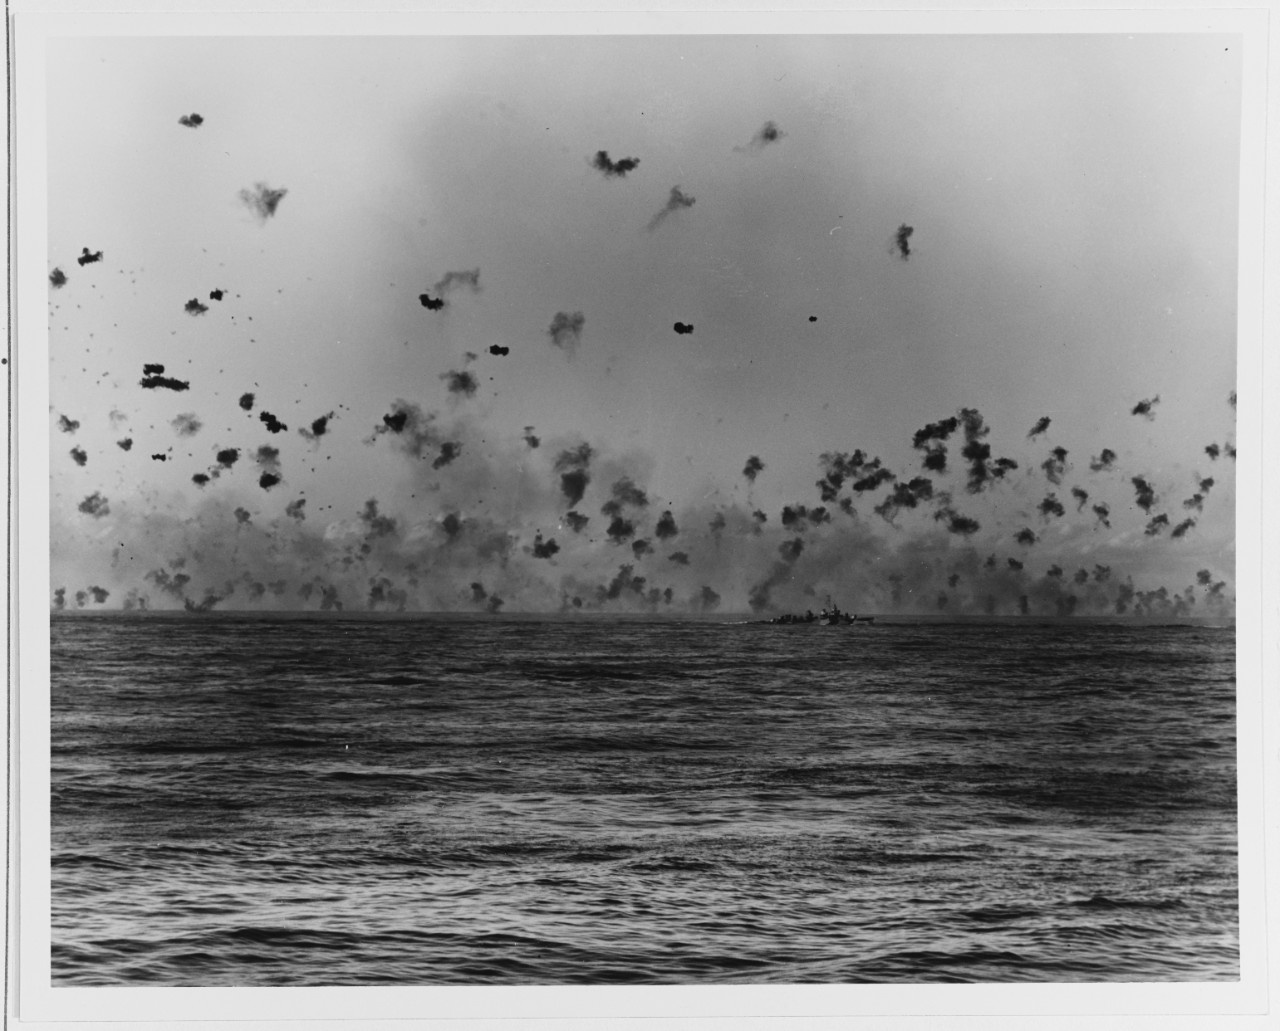 Lingayen Gulf Landings, 1945